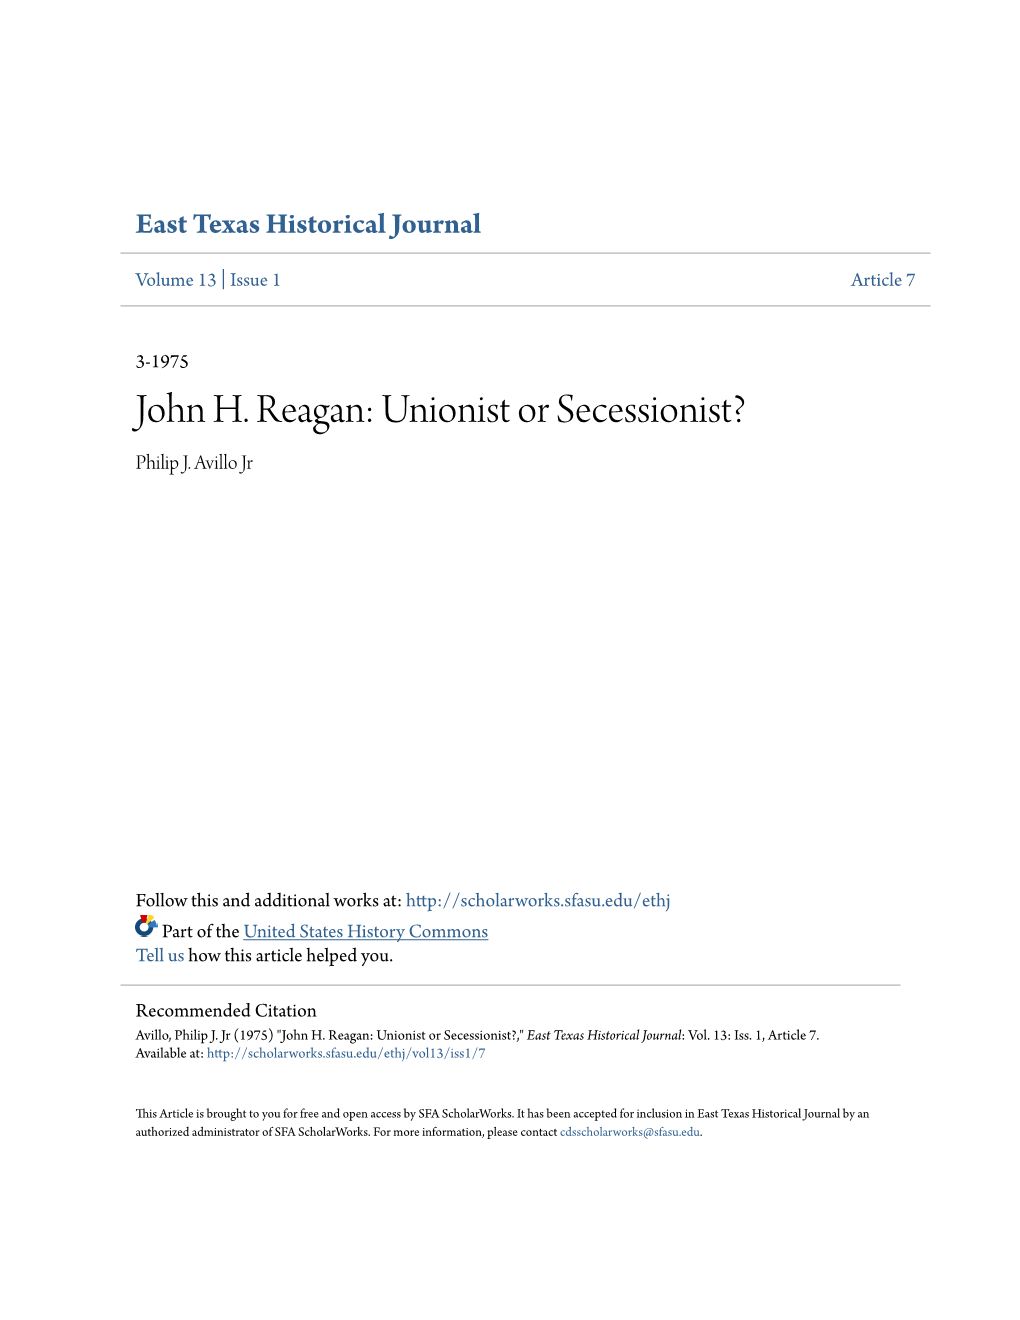 John H. Reagan: Unionist Or Secessionist? Philip J